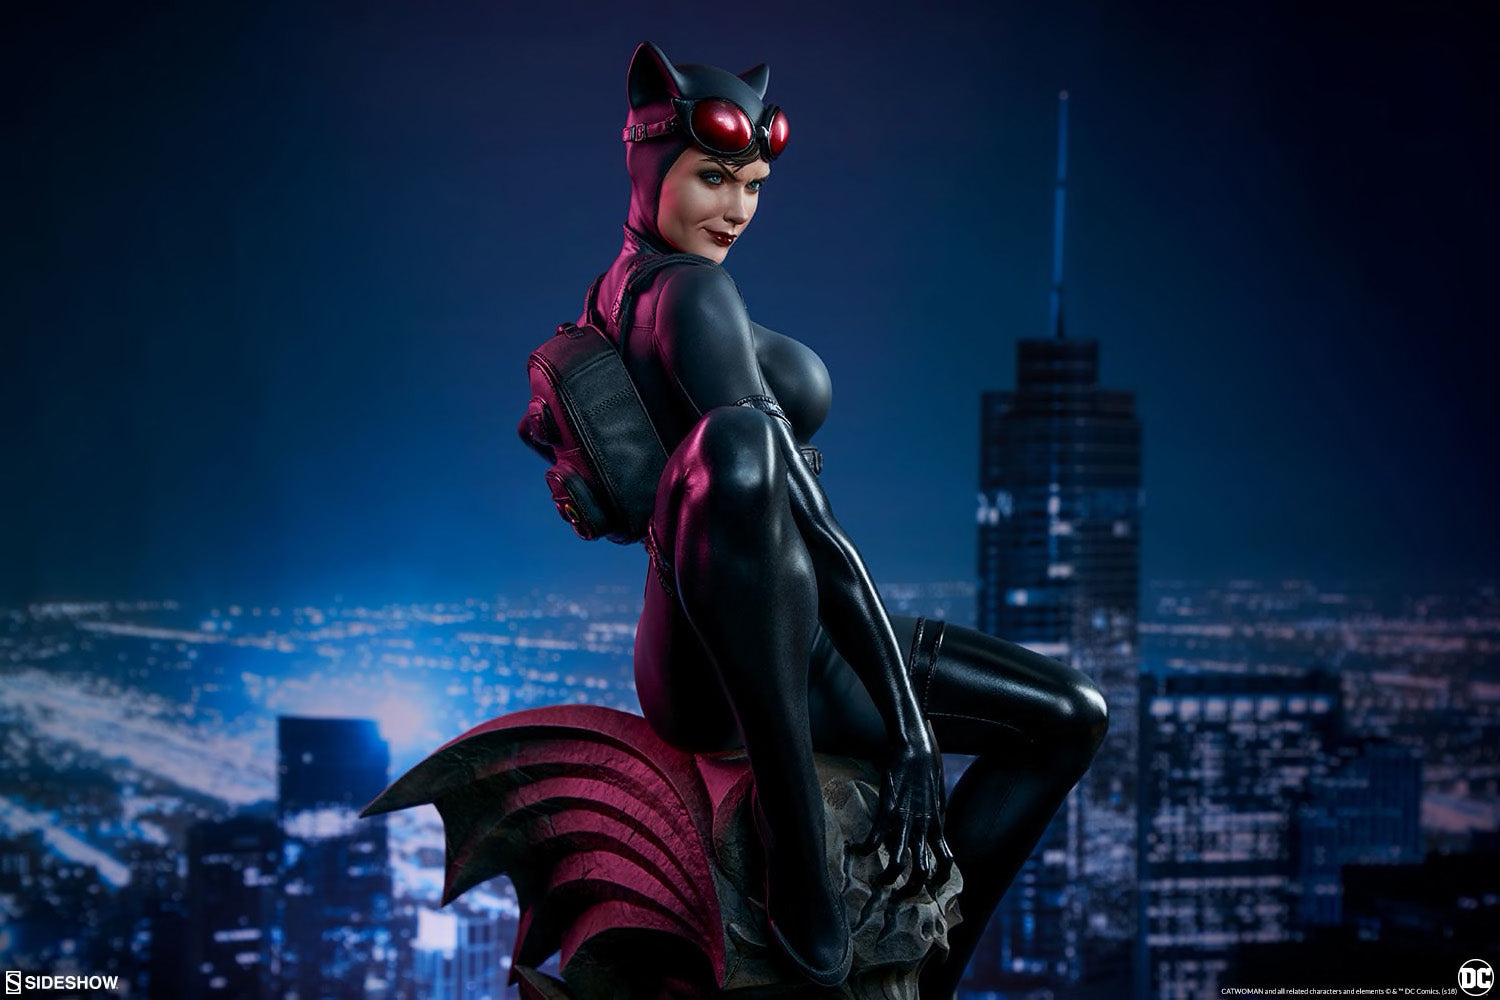 Sideshow Collectibles - Premium Format Figure - DC Comics - Catwoman - Marvelous Toys